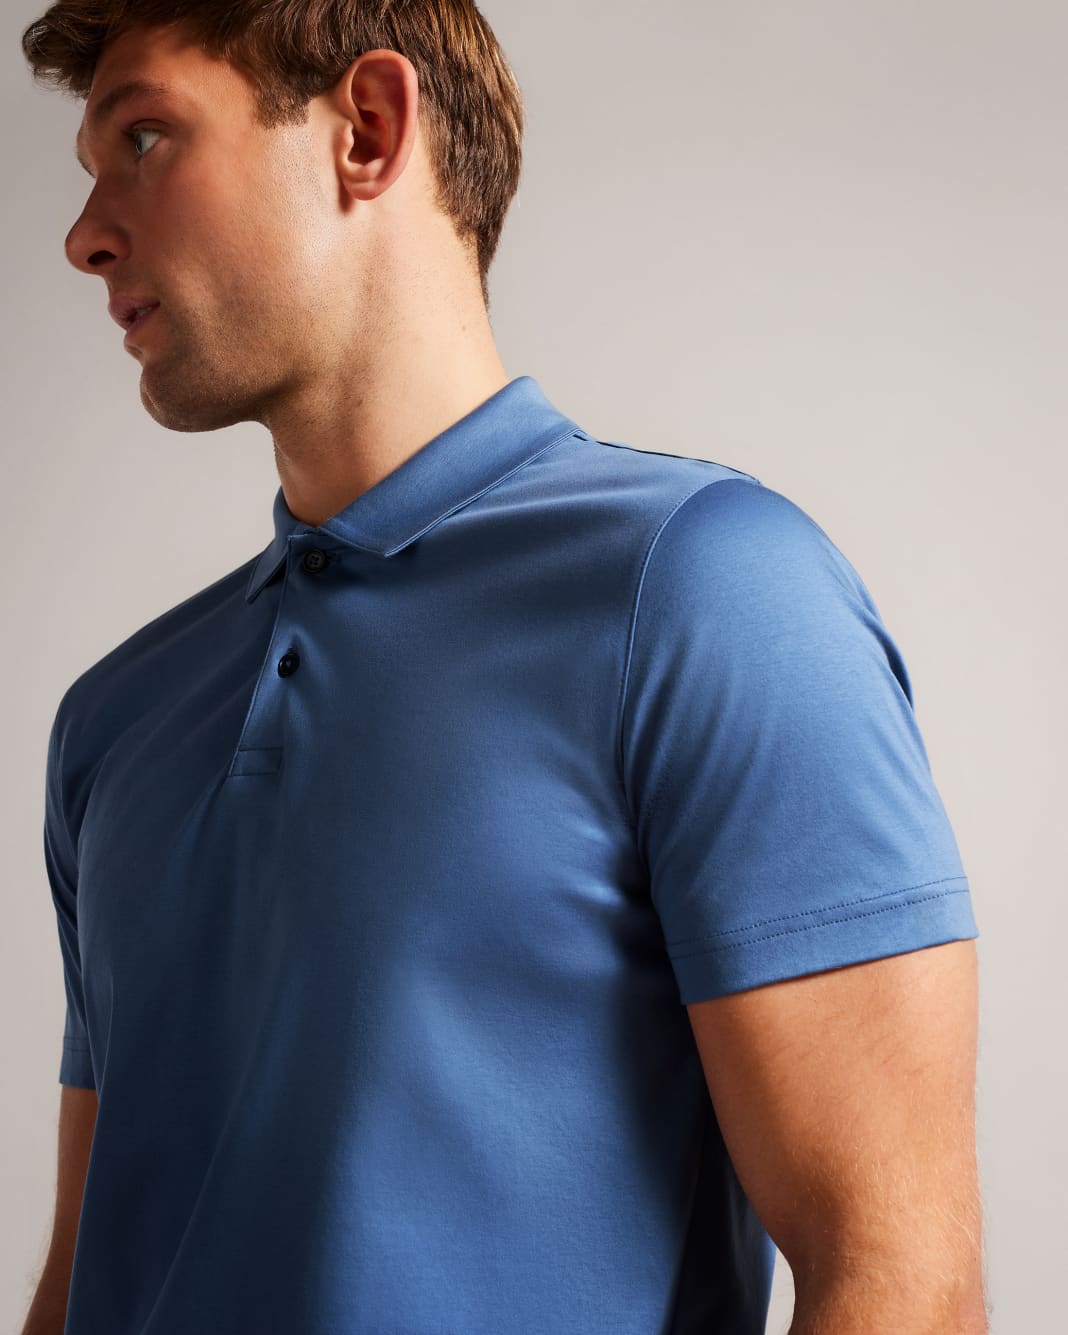 테드베이커 Tedbaker Short Sleeve Slim Fit Polo Shirt,Dark Blue